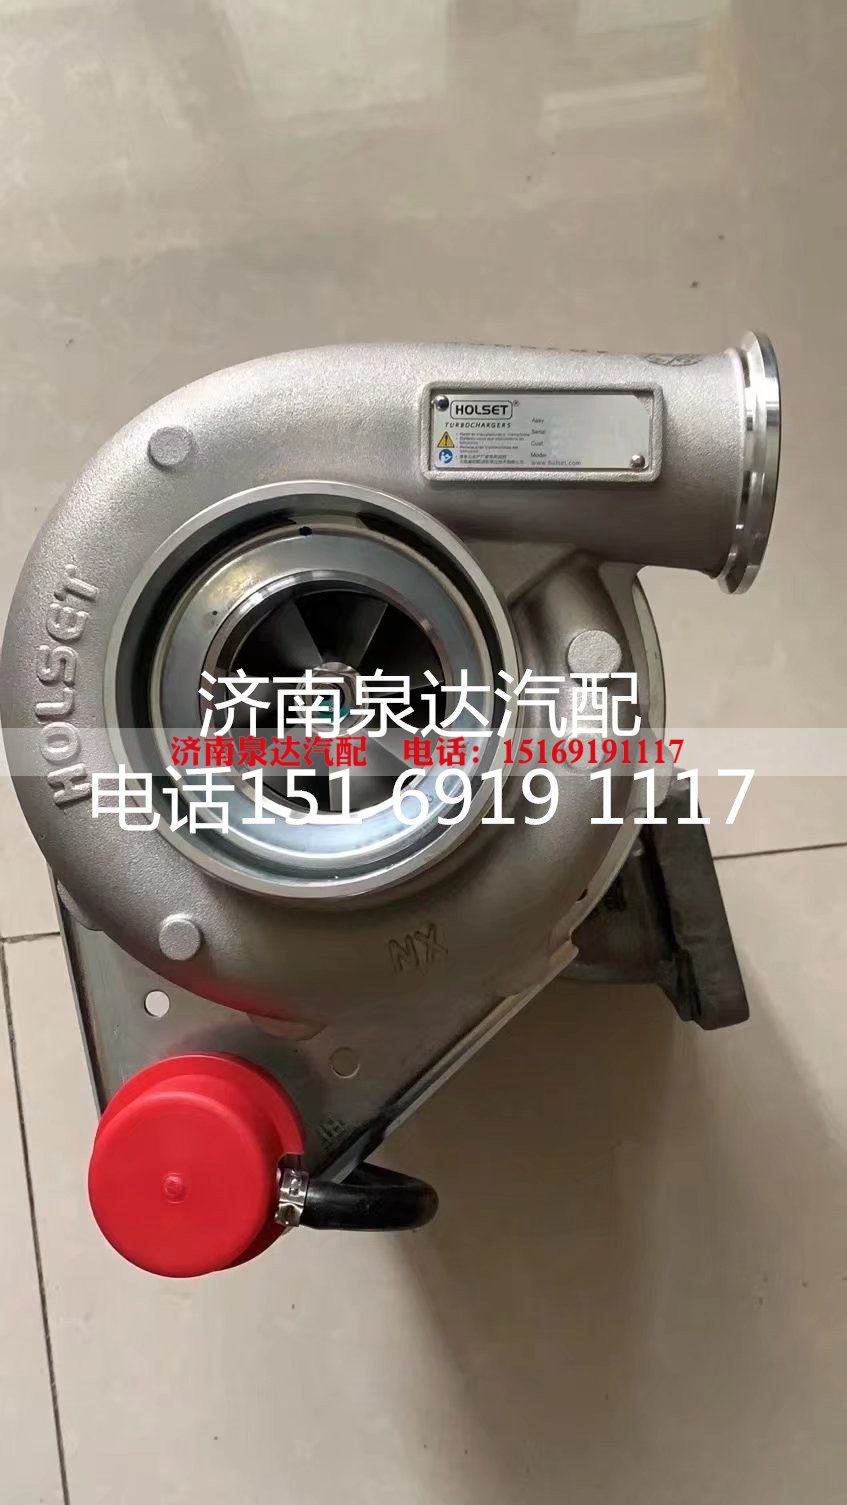 VG1238110004,涡轮增压器,济南泉达汽配有限公司